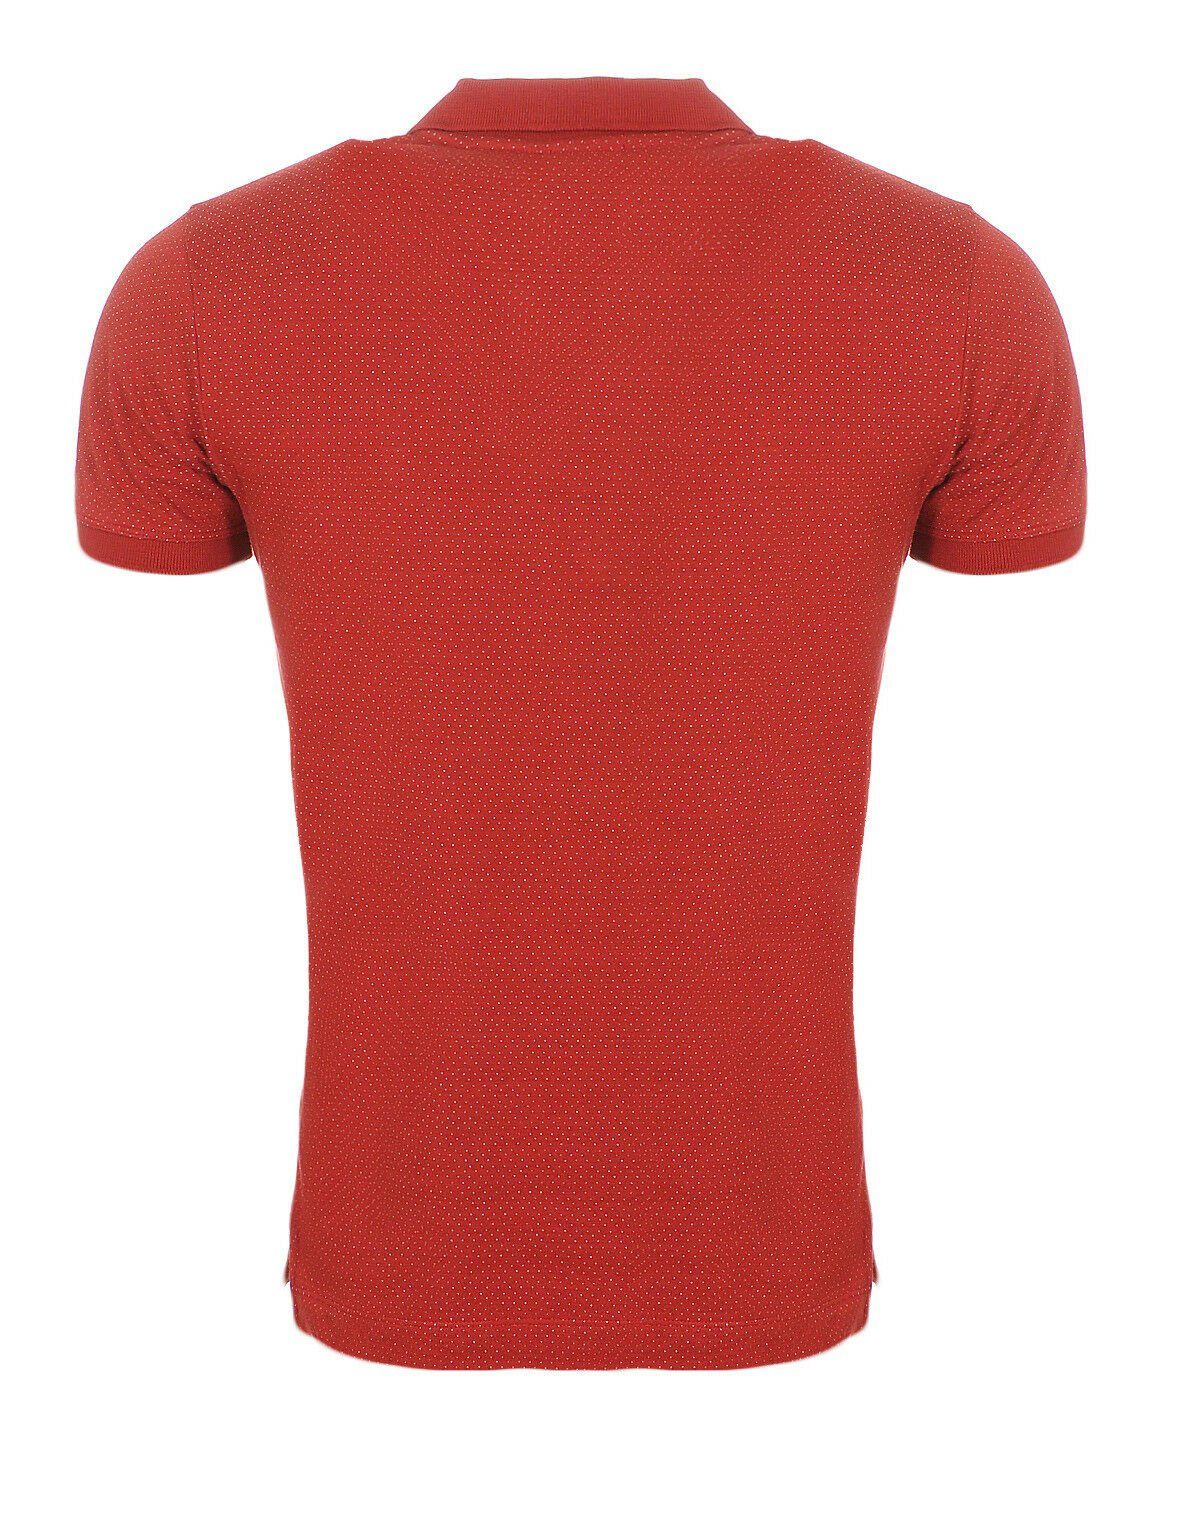 Diesel Poloshirt Diesel Brustbereich, Labelstitching Punkte, im Poloshirt Herren mit Rot T-KALAR-DOTS Oberfläche unifarben, Rundhalsausschnitt, Muster bepunktet